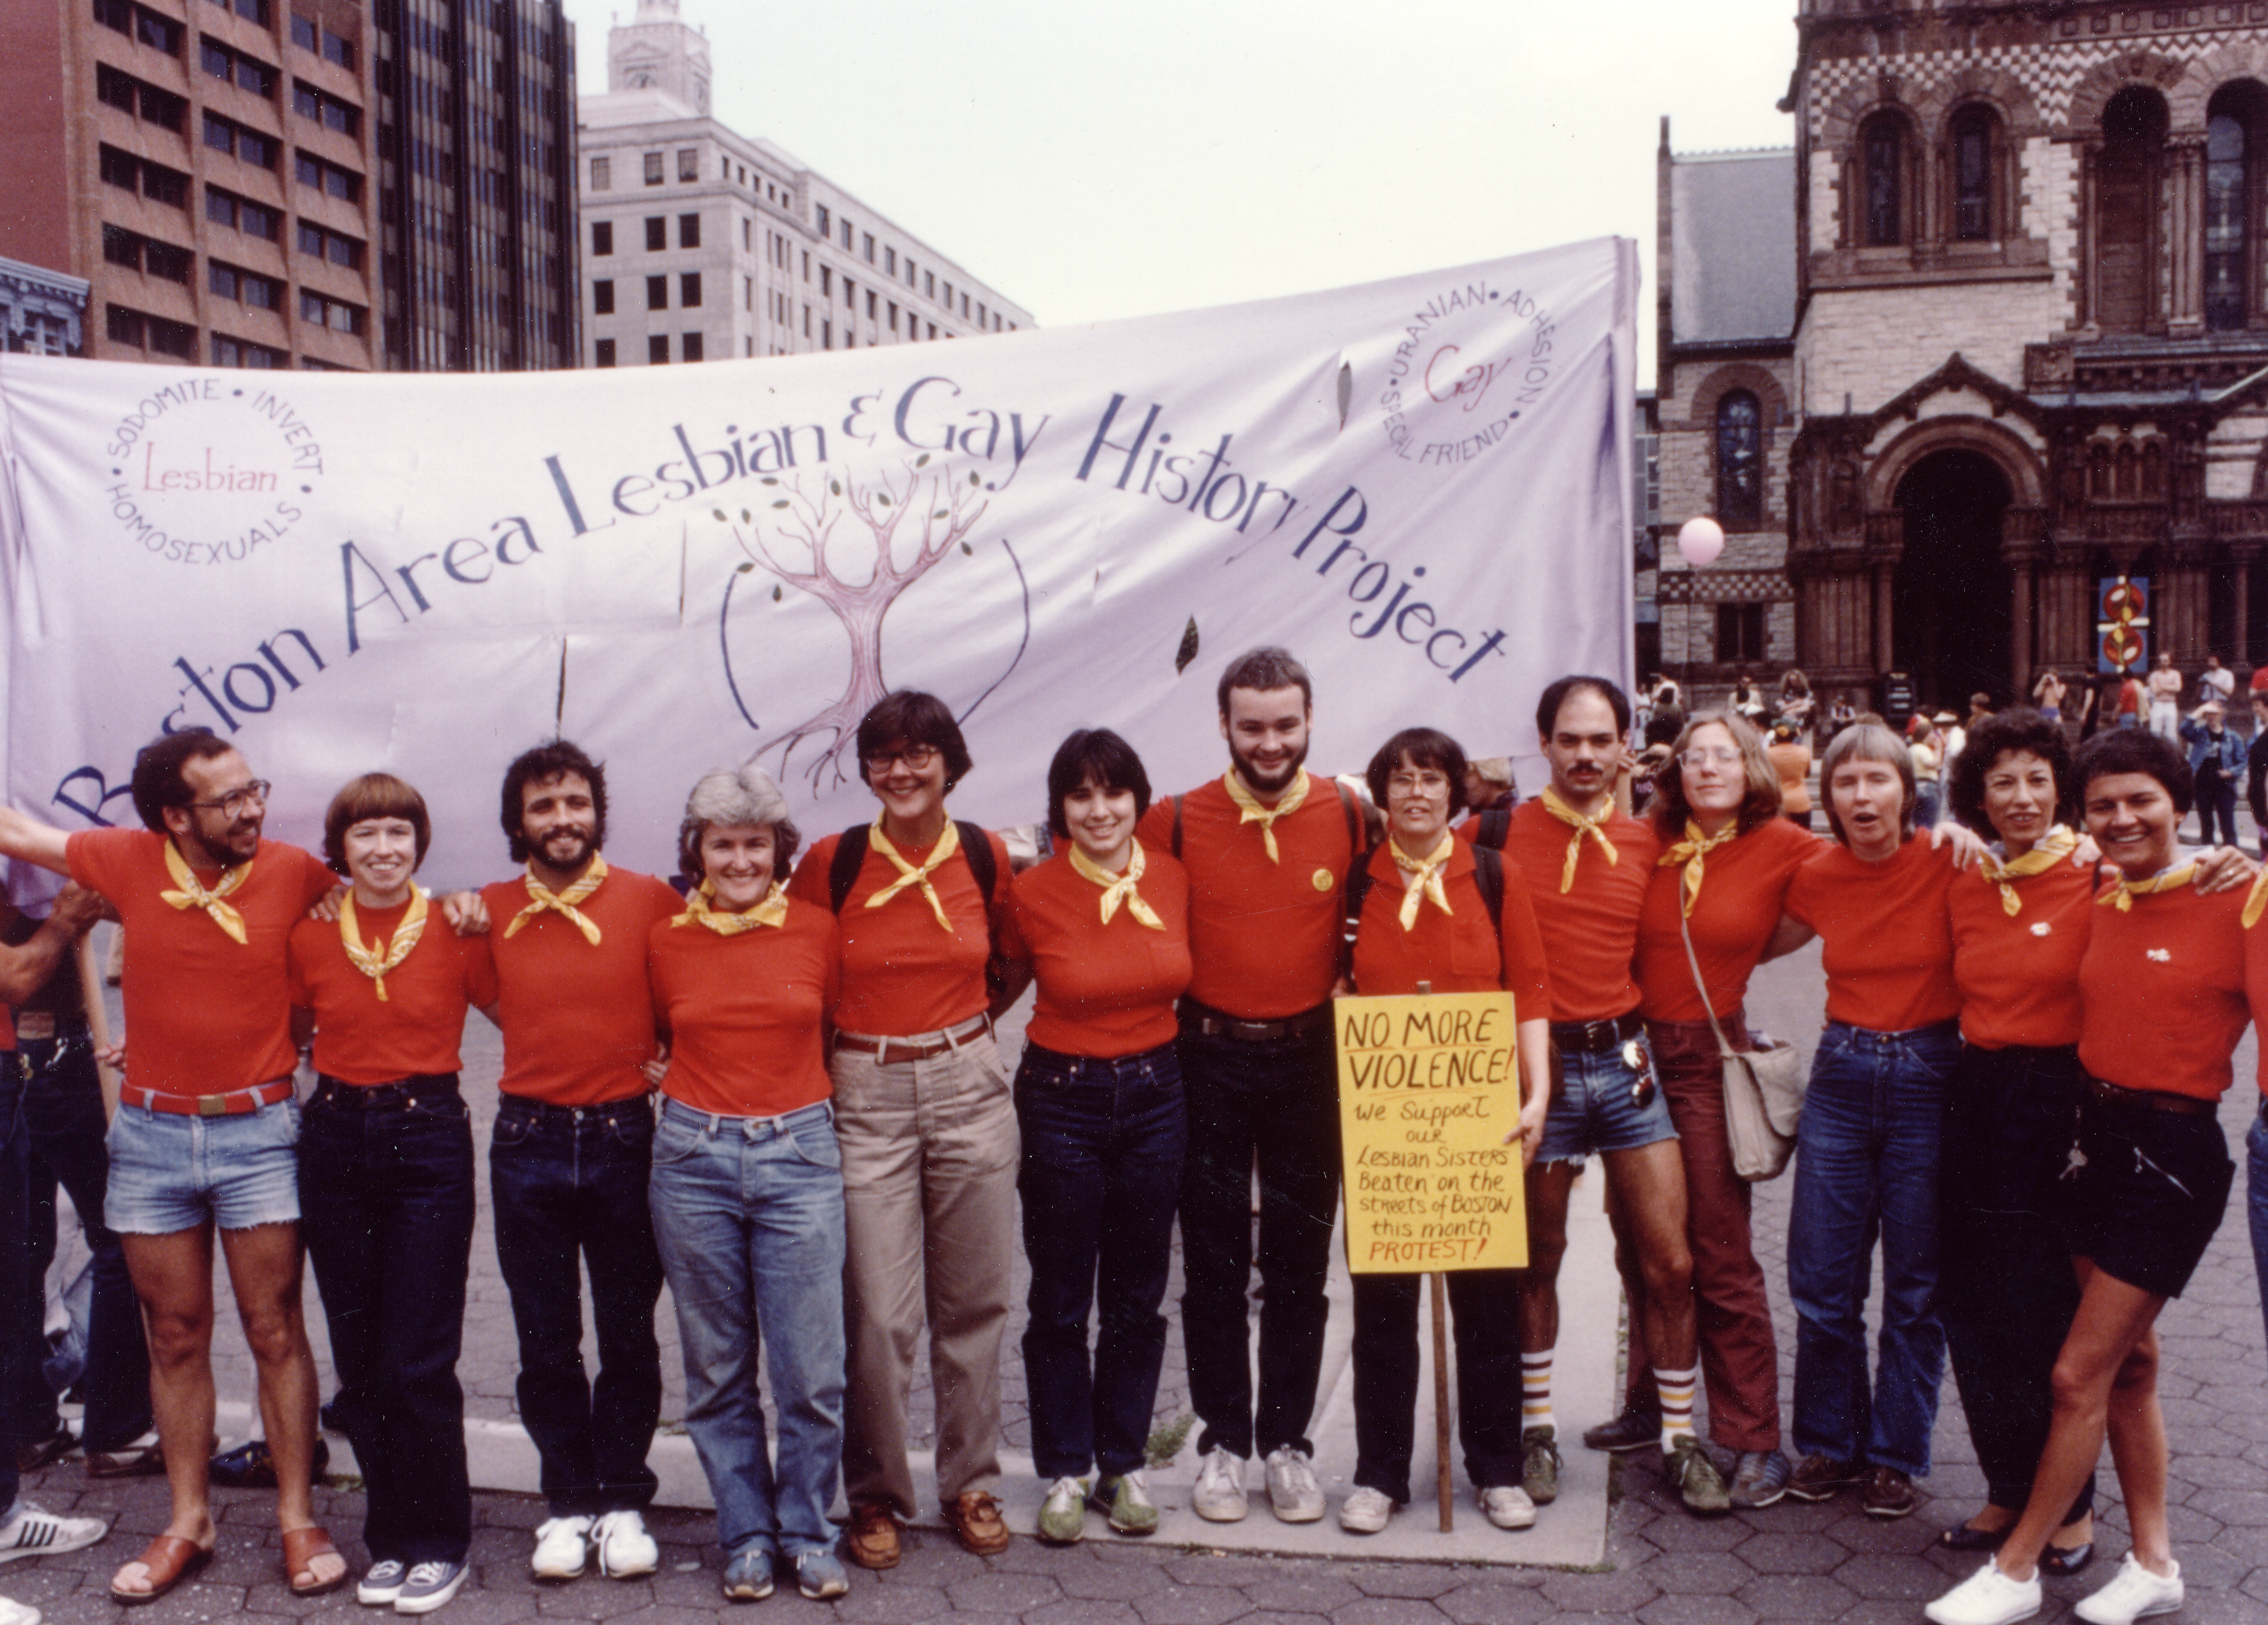 Pride, c.1980. Boston Area Lesbian & Gay History Project in Copley Square